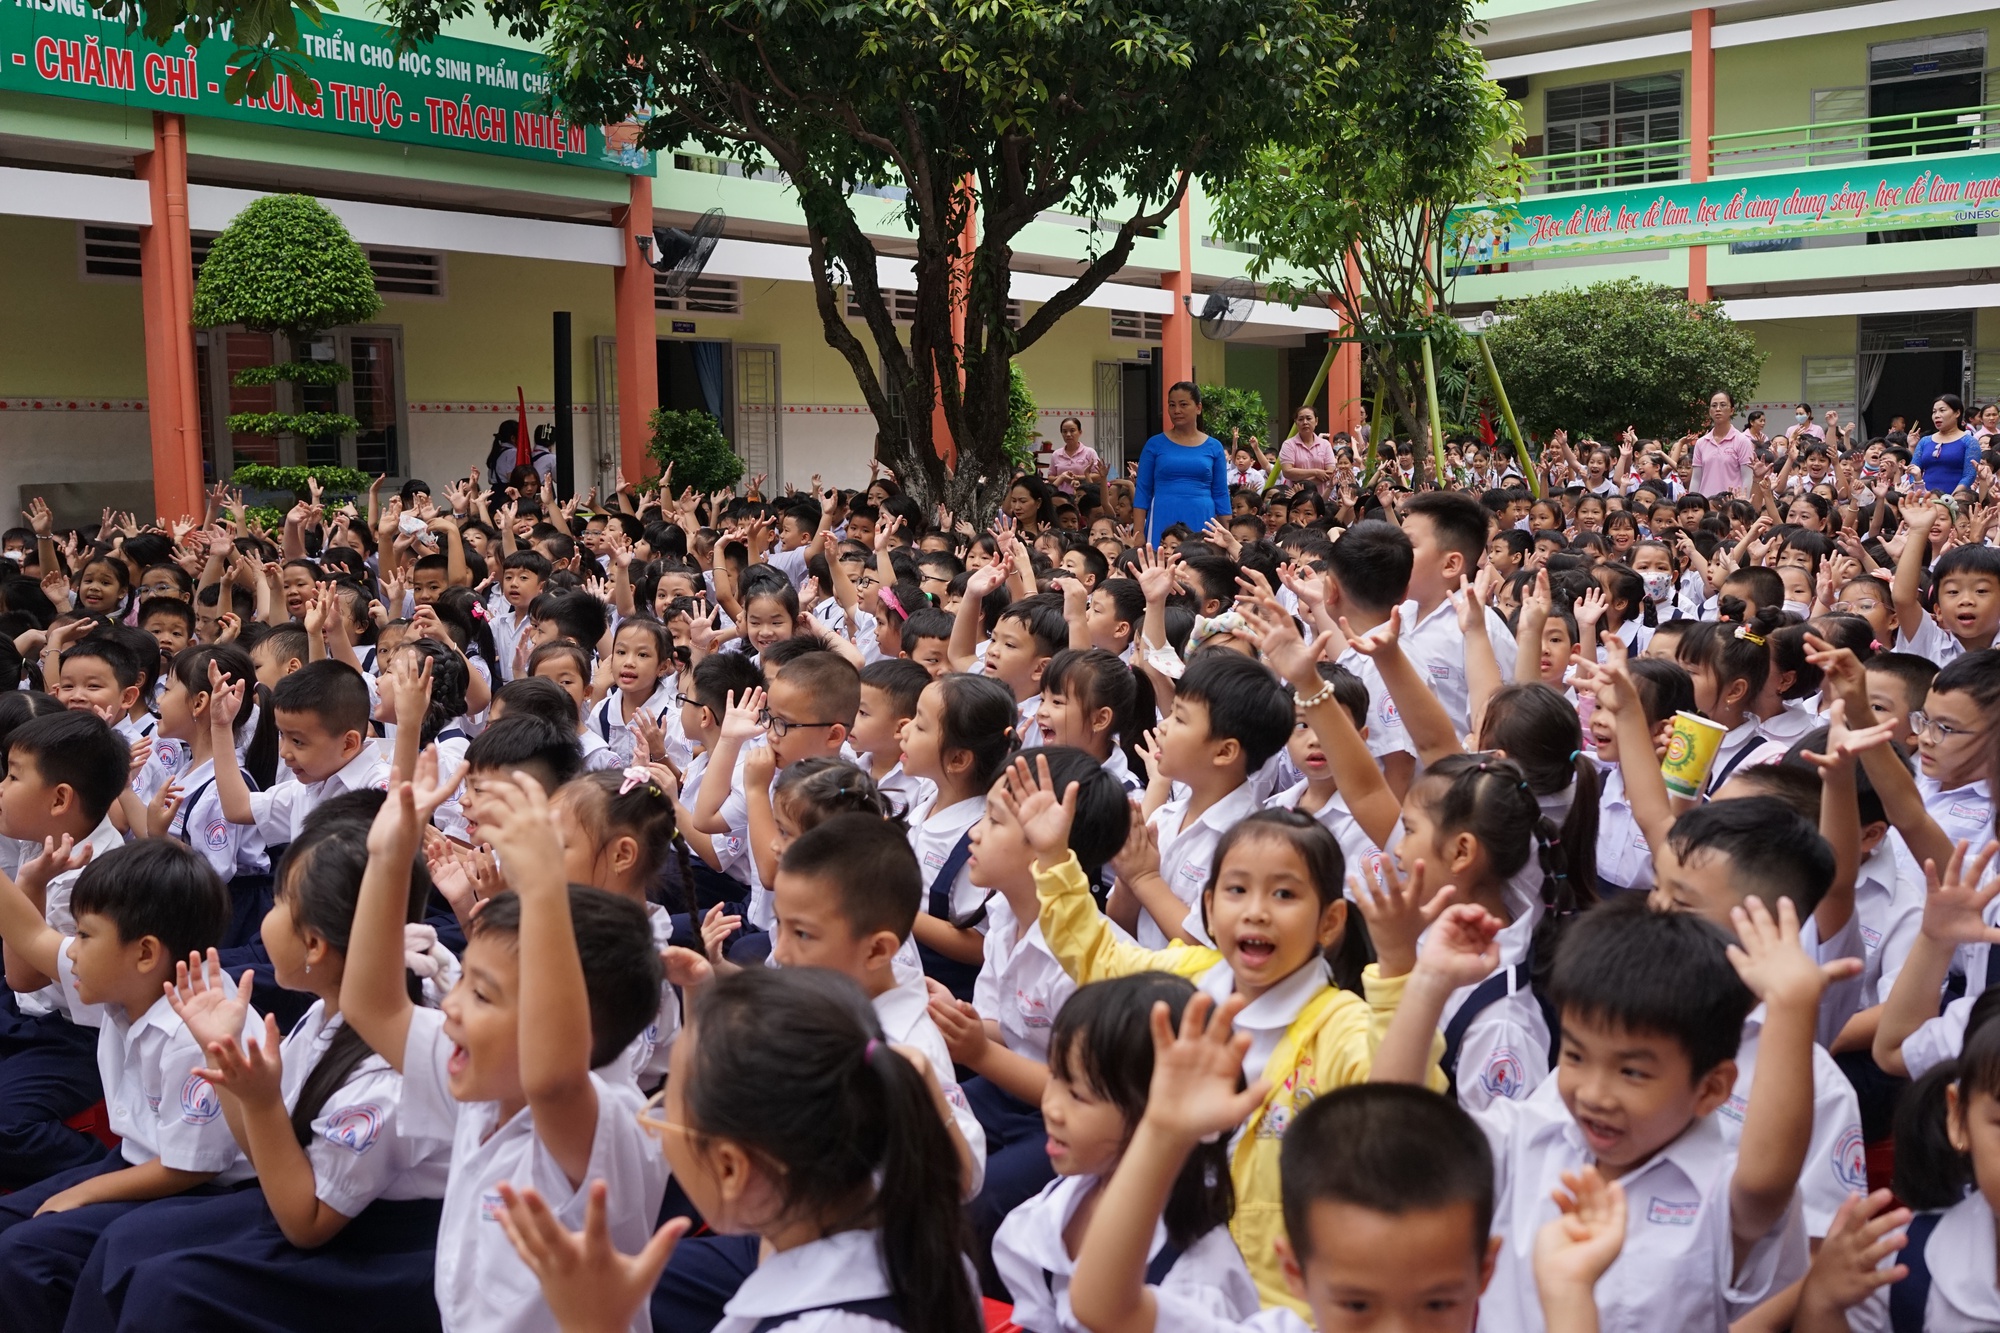 HEAD Sơn Minh trao mũ bảo hiểm cho học sinh trường tiểu học Đinh Tiên Hoàng (TP Thủ Đức) - Ảnh 3.